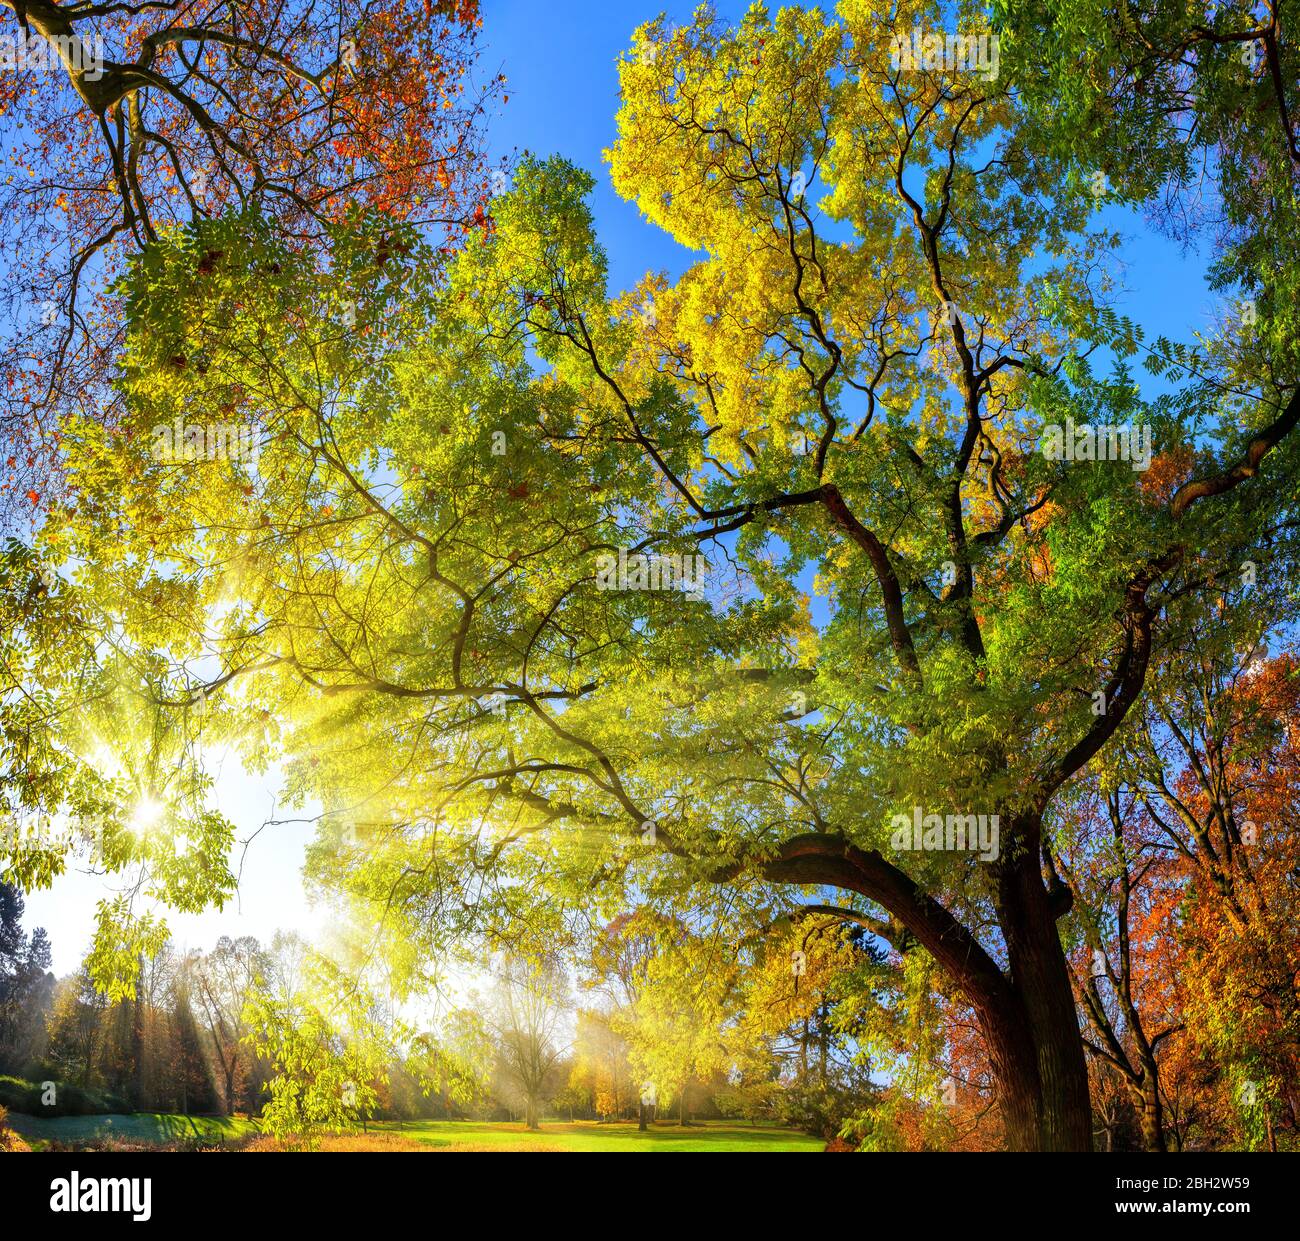 Colorato paesaggio sparato di alberi meravigliosi in un parco, con cielo blu e i raggi del sole che cadono attraverso i rami Foto Stock